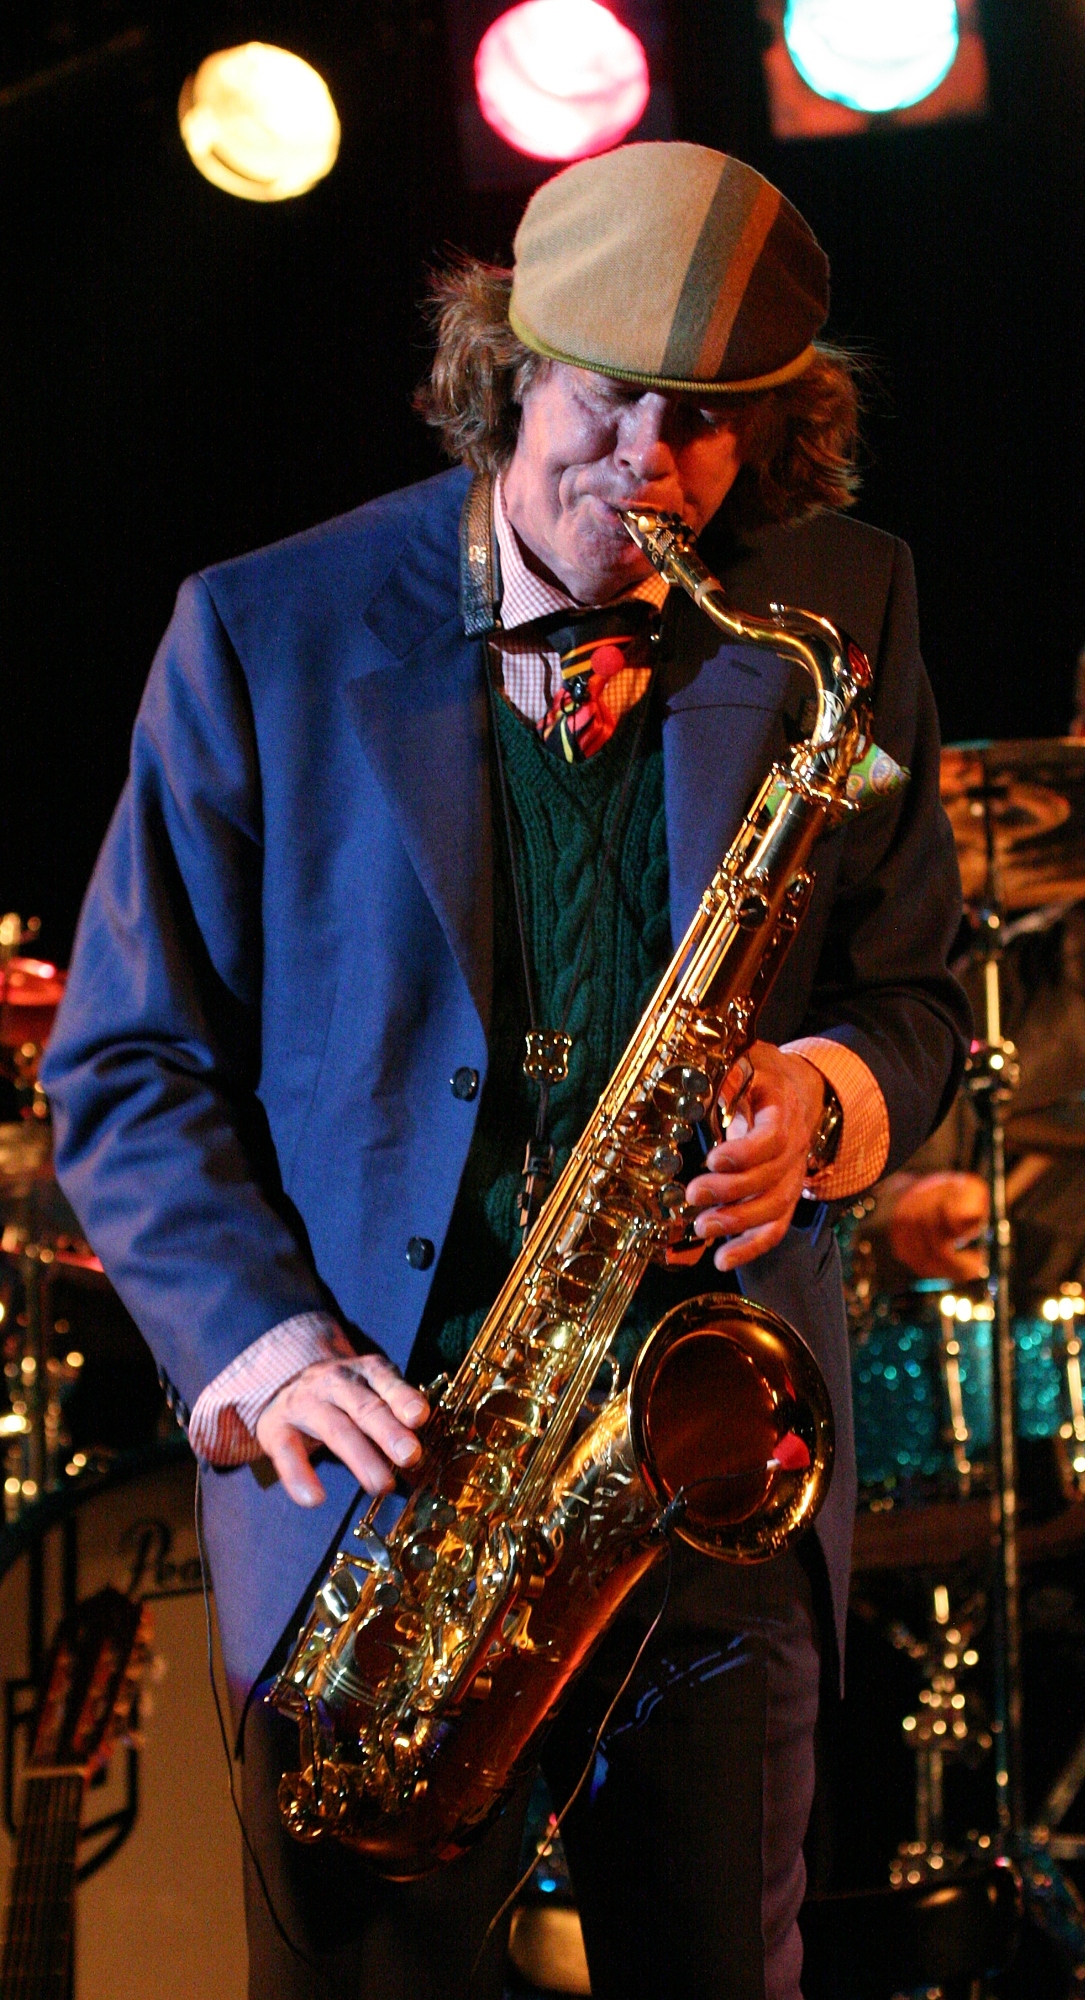 2010/01/helge-schneider-saxophone-2009